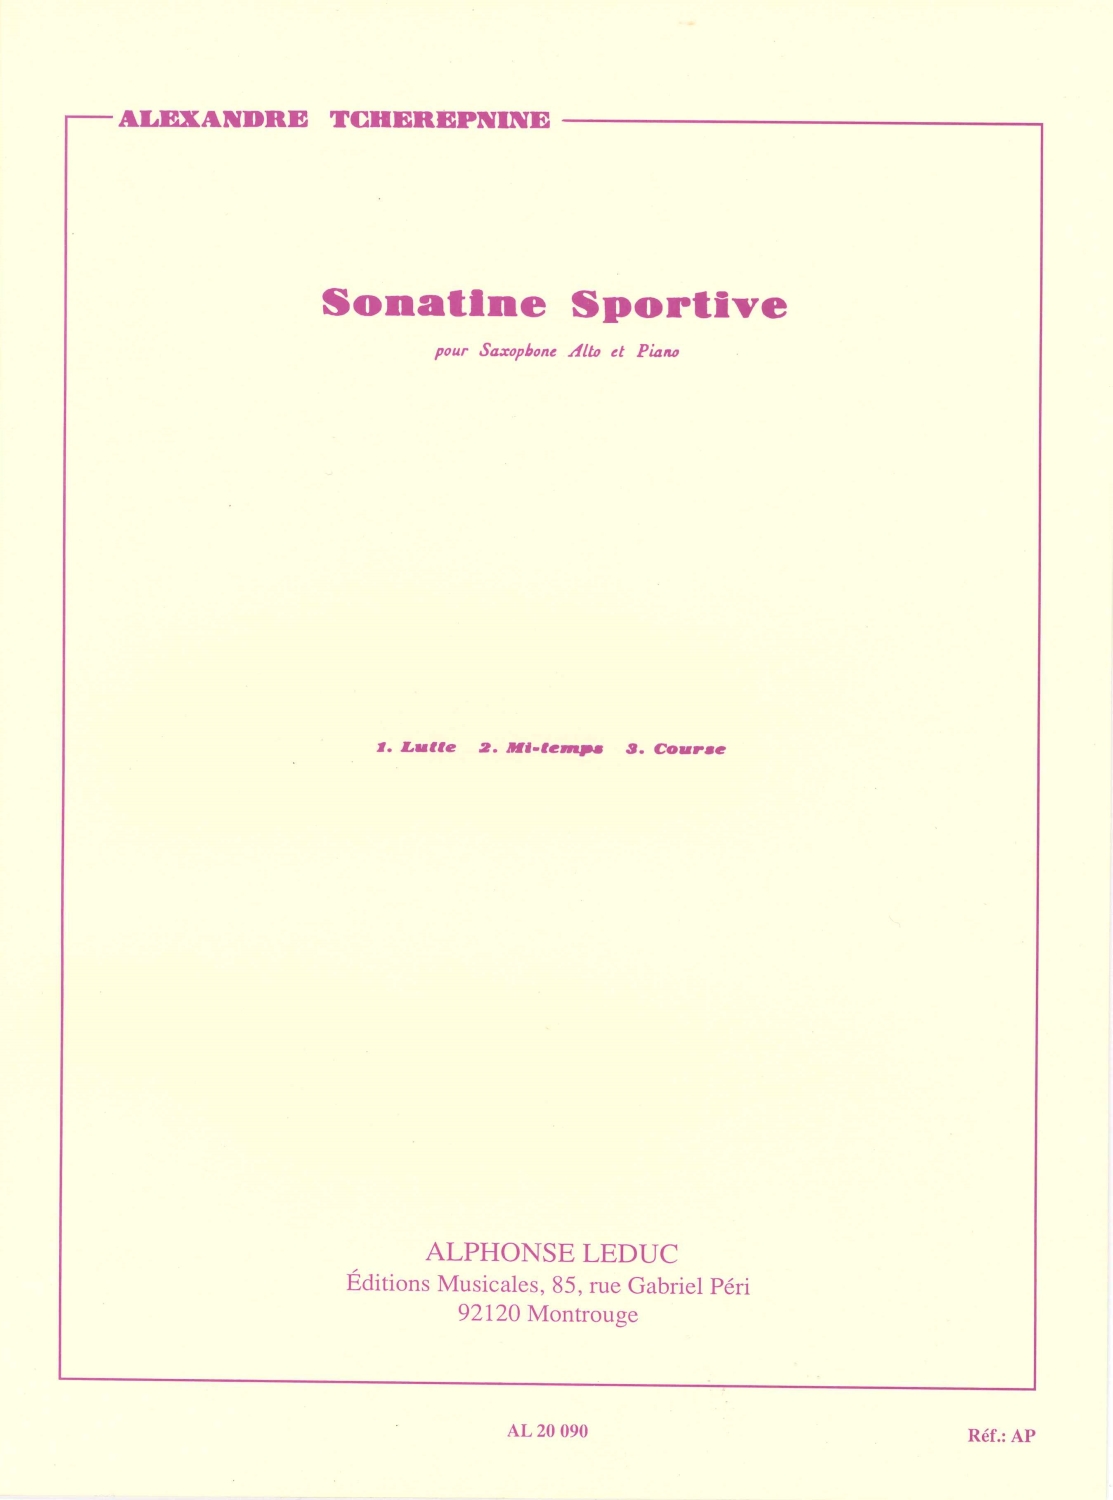 alexander-tscherepnin-sonatine-sportive-asax-pno-_0001.JPG